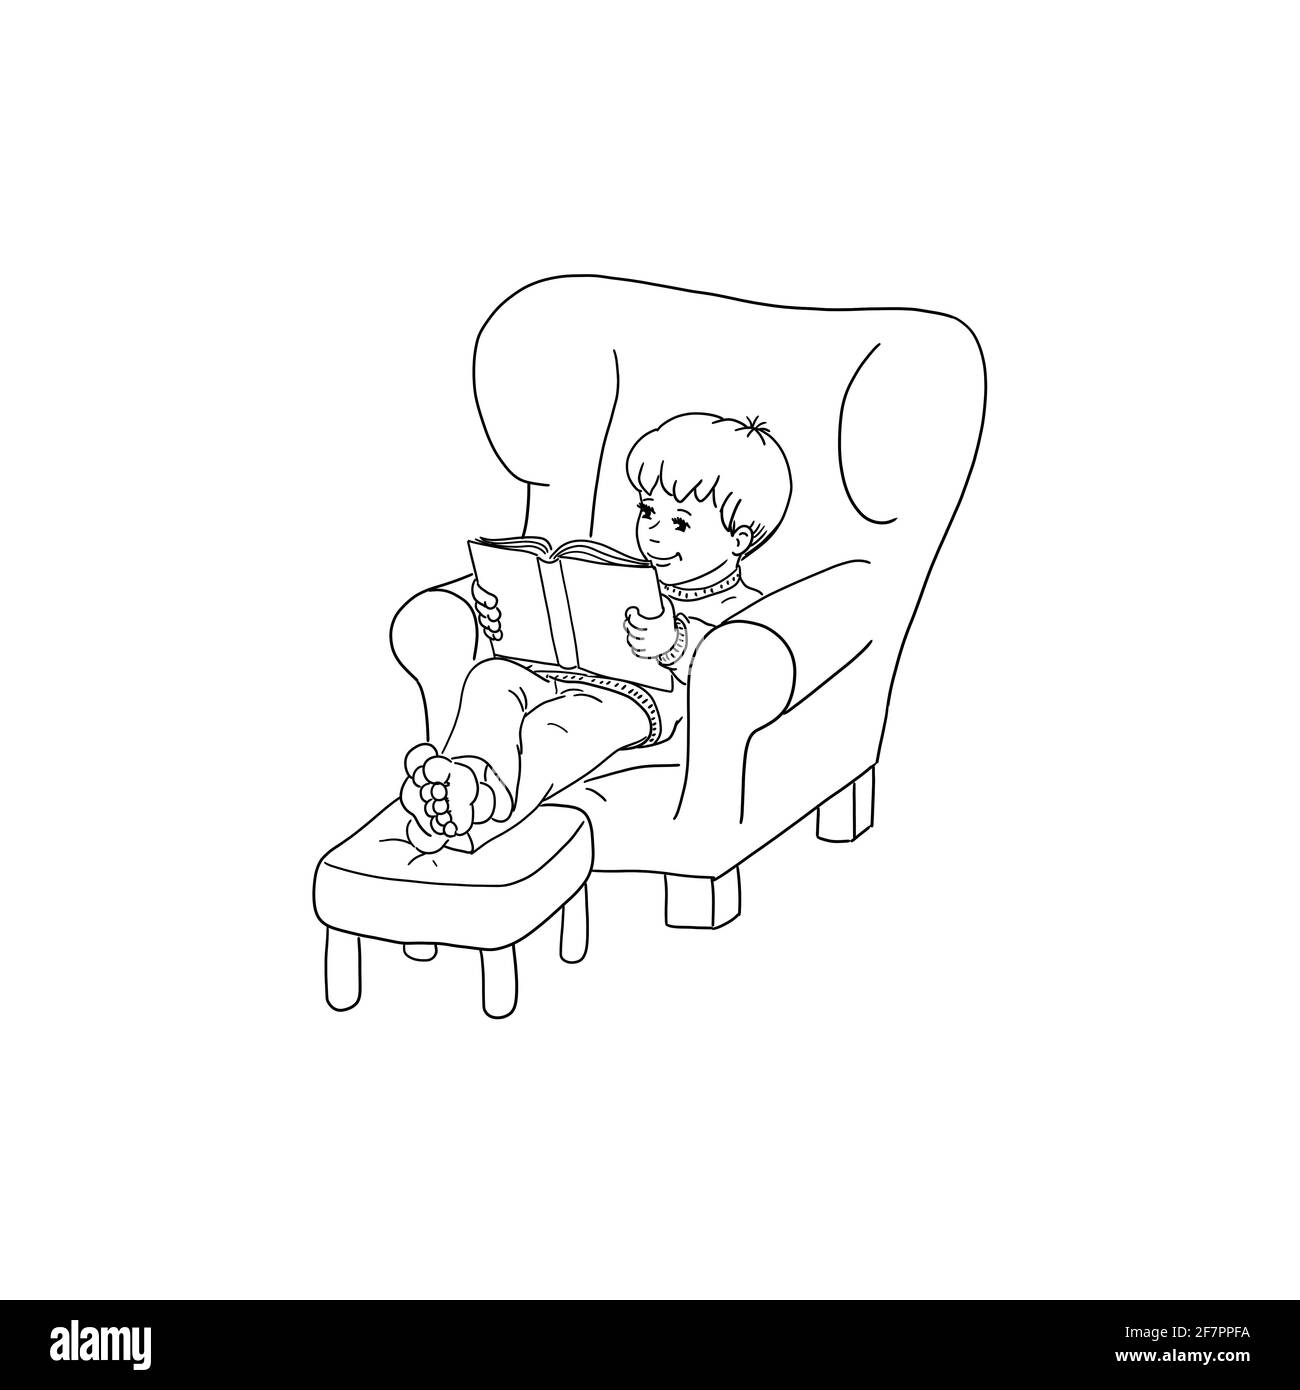 El niño se sienta cómodamente en un sillón descalzo pies sobre el taburete cómodamente lee libro infantil fascinado perdido en la infancia disfrutar ganar tiempo libre Foto de stock